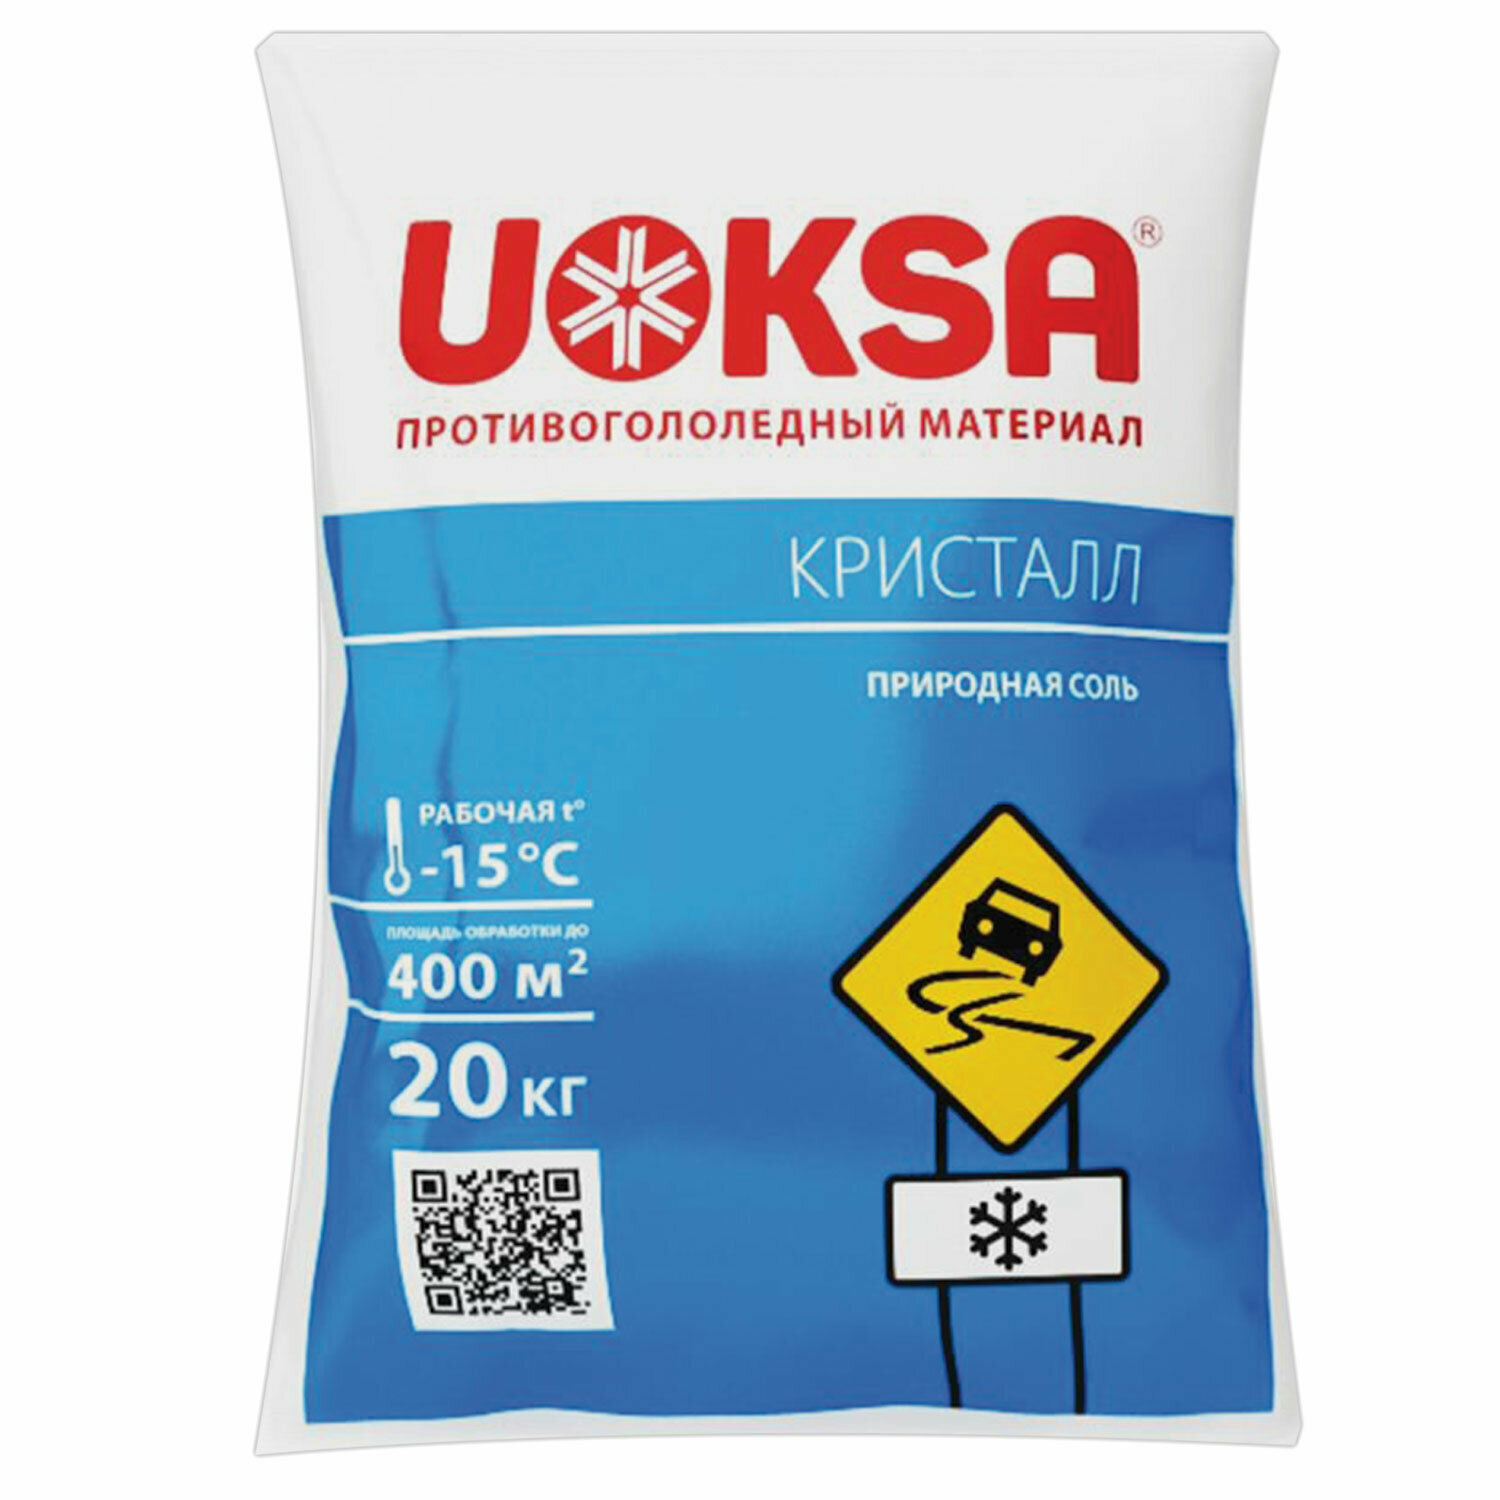 Материал противогололёдный 20 кг UOKSA КрИстал, до -15°C, природная соль, мешок В комплекте: 1шт.